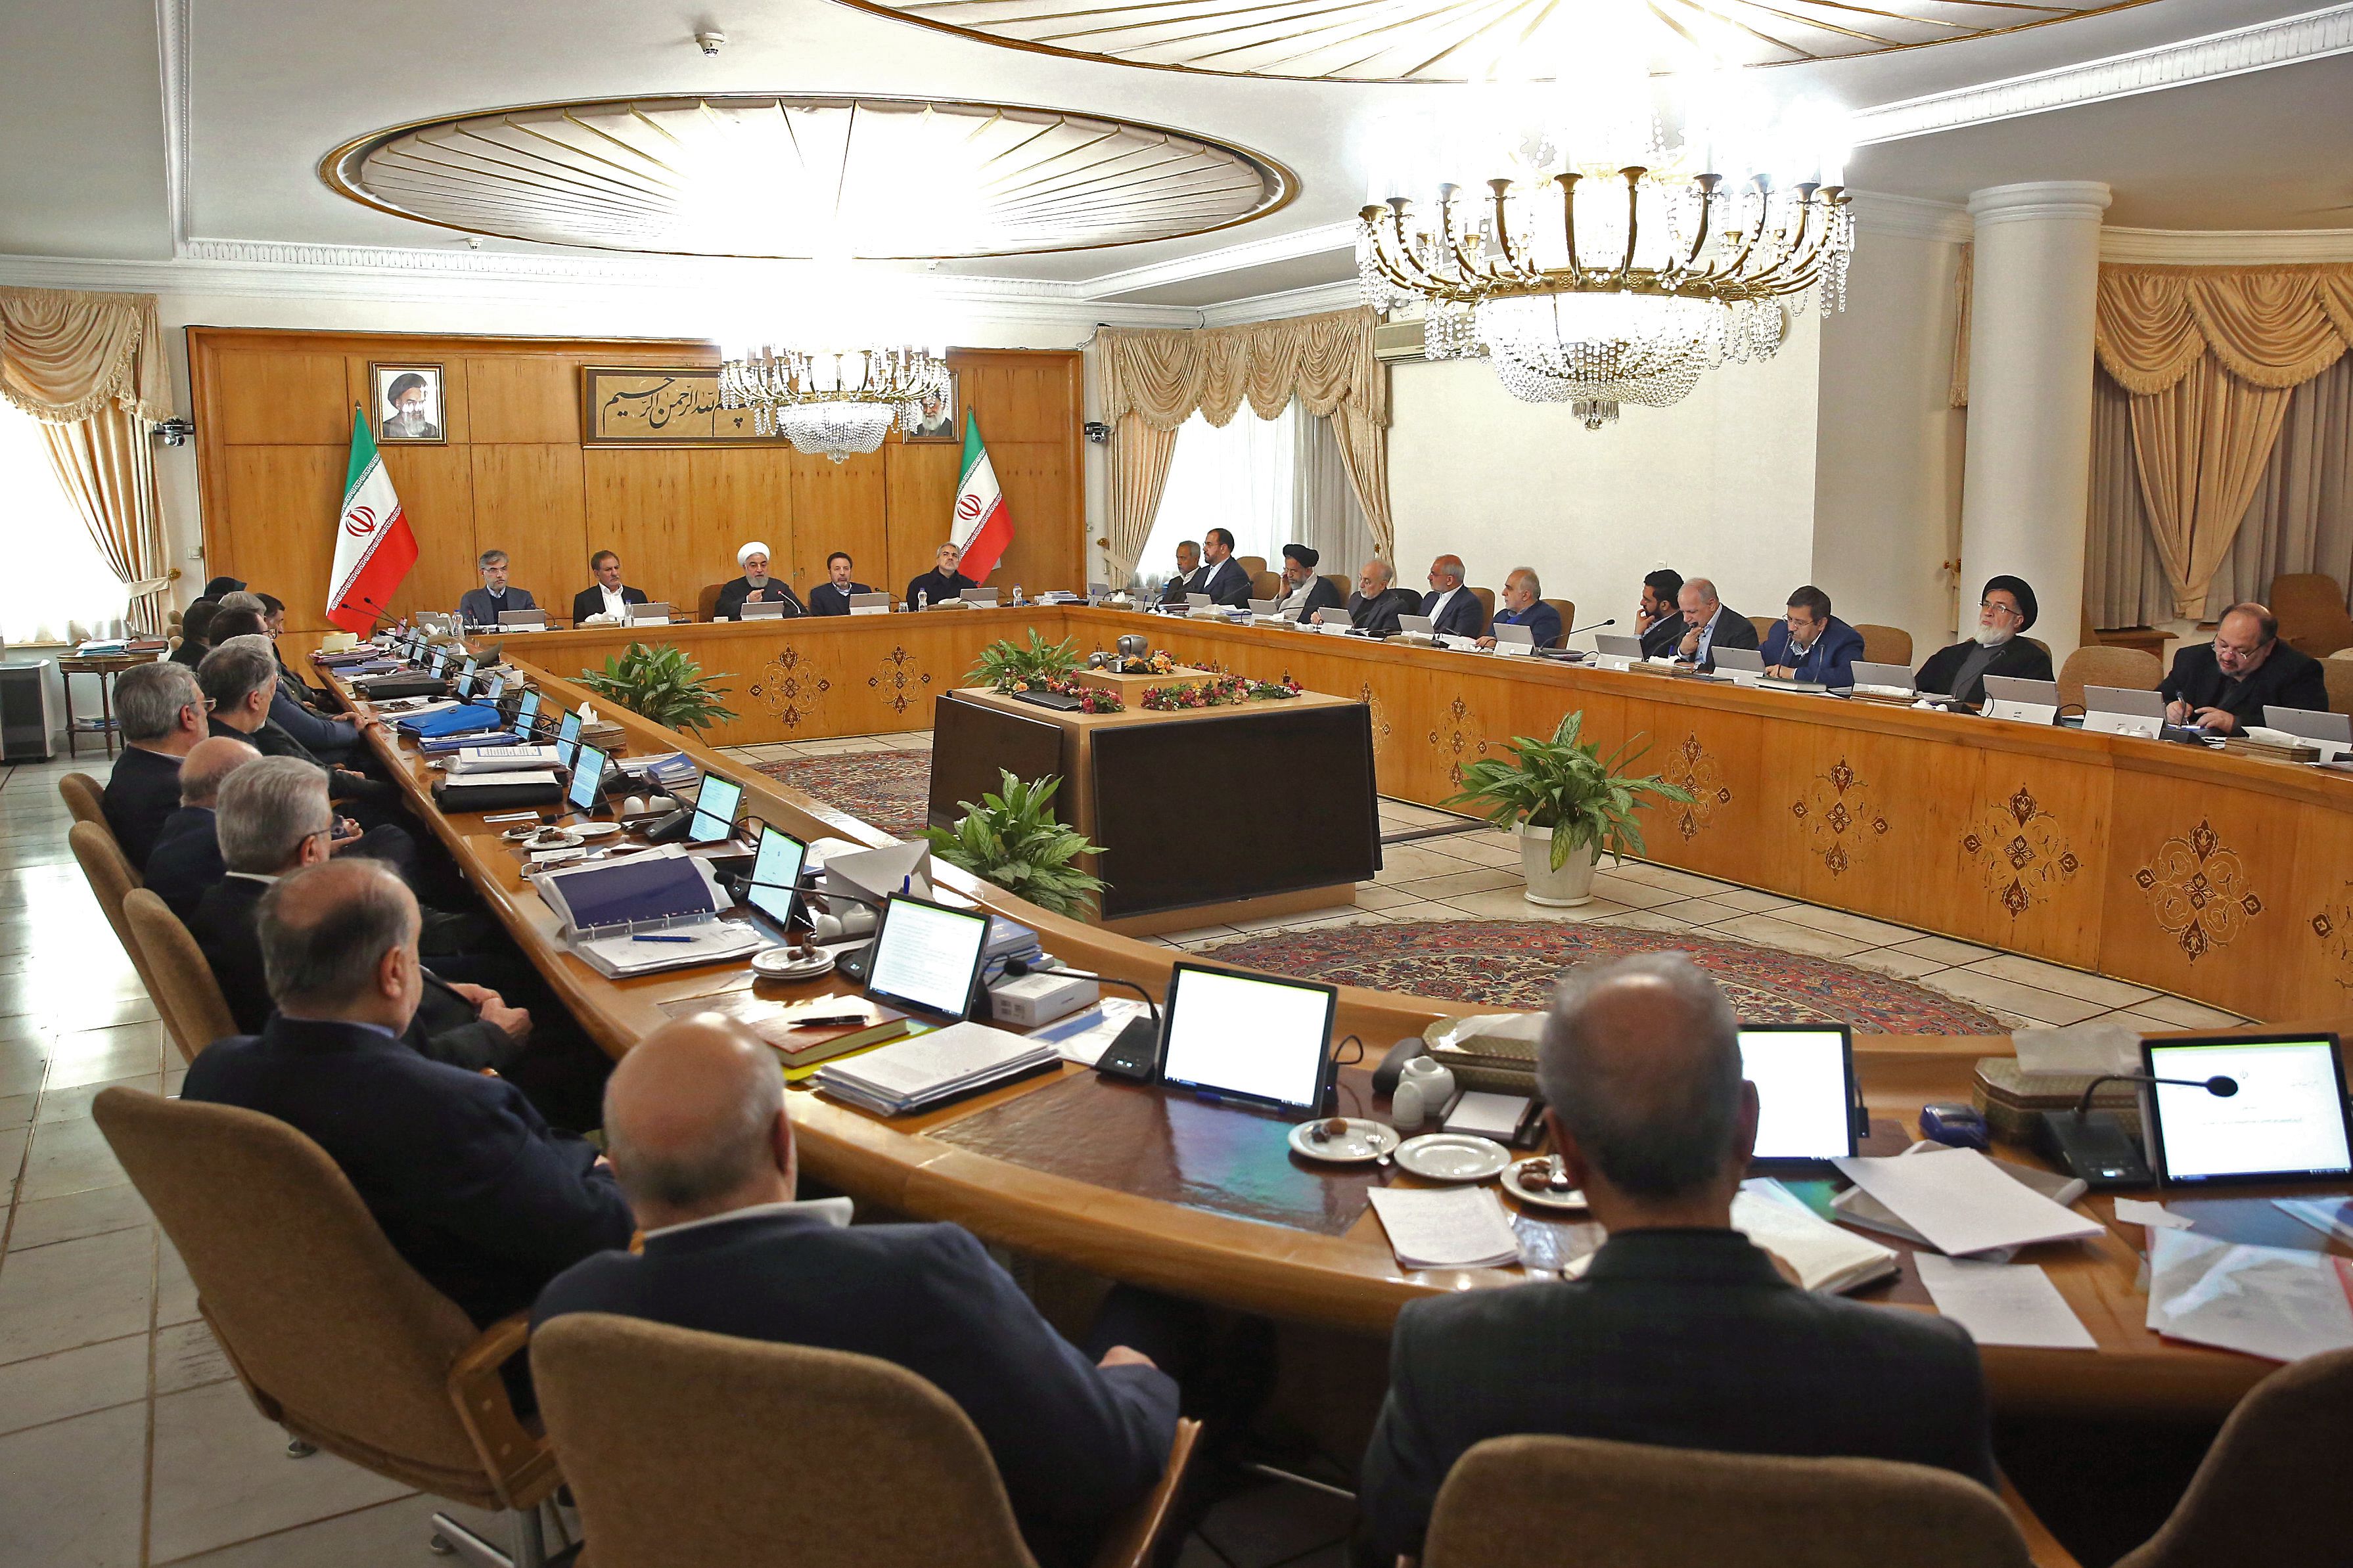 El gabinete reunido escucha el pedido de "diversidad" realizado por Rouhani (AFP)